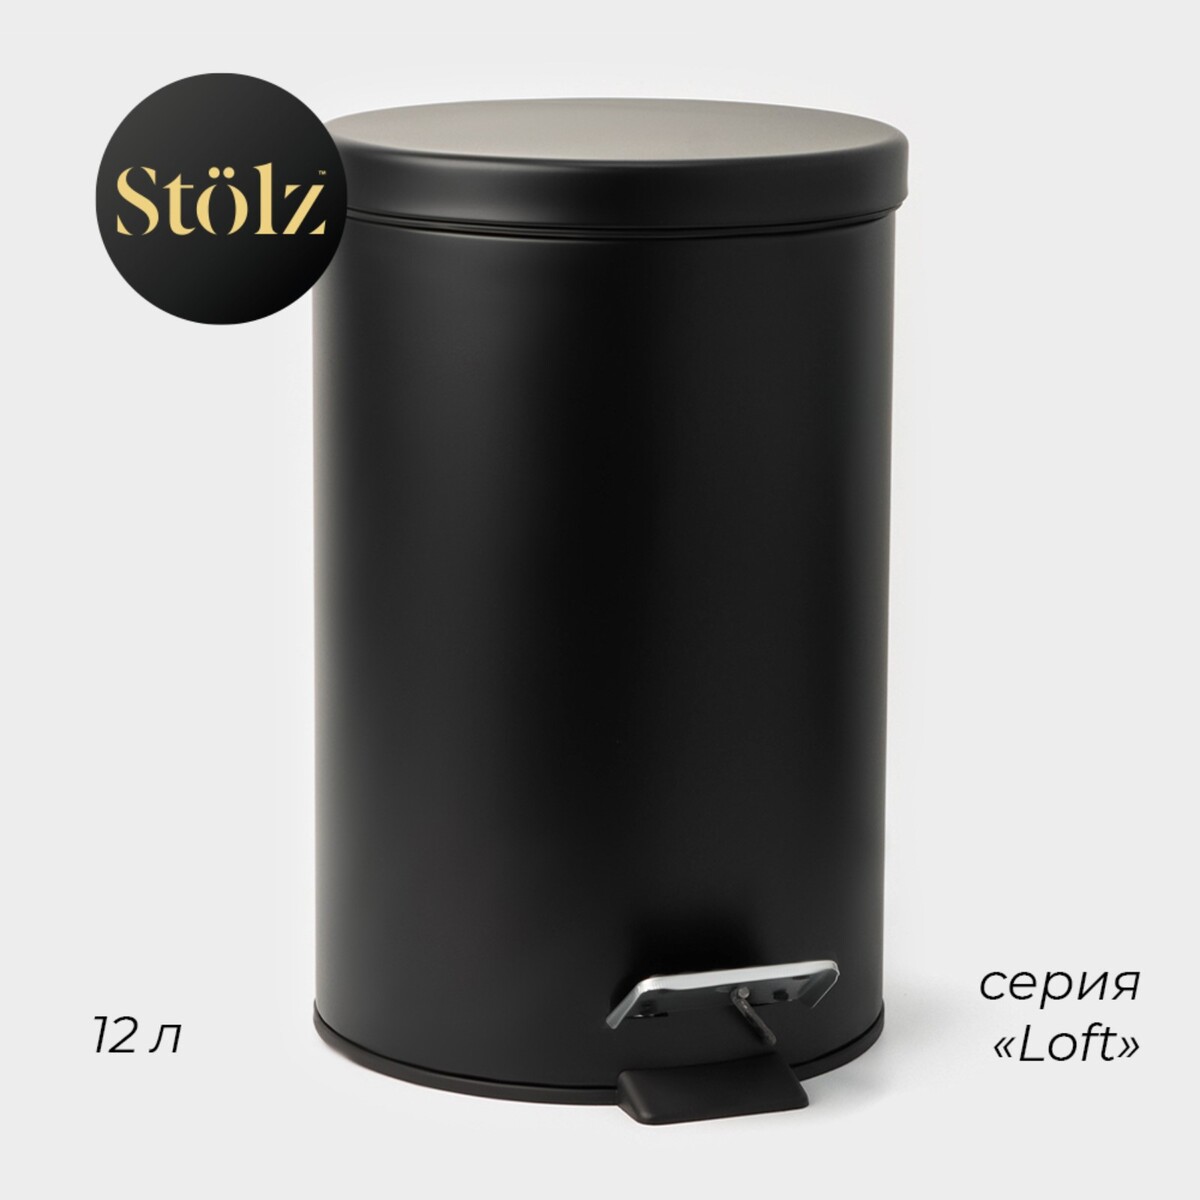 Ведро мусорное с педалью штольц stölz, 12 л, нержавеющая сталь, цвет черный